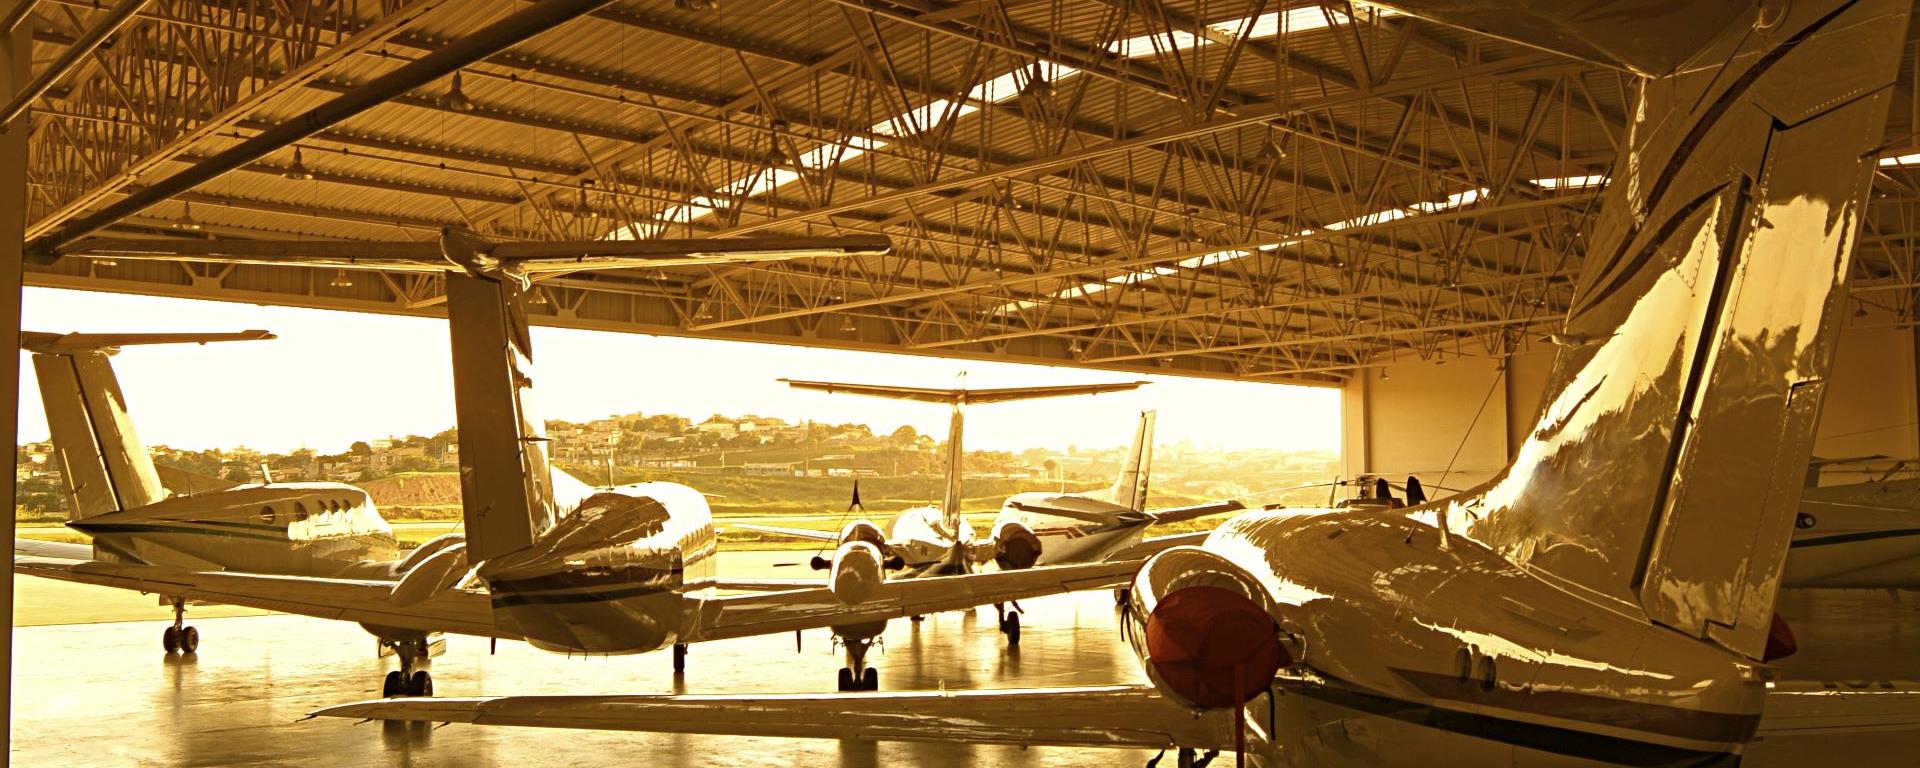 hangar-image